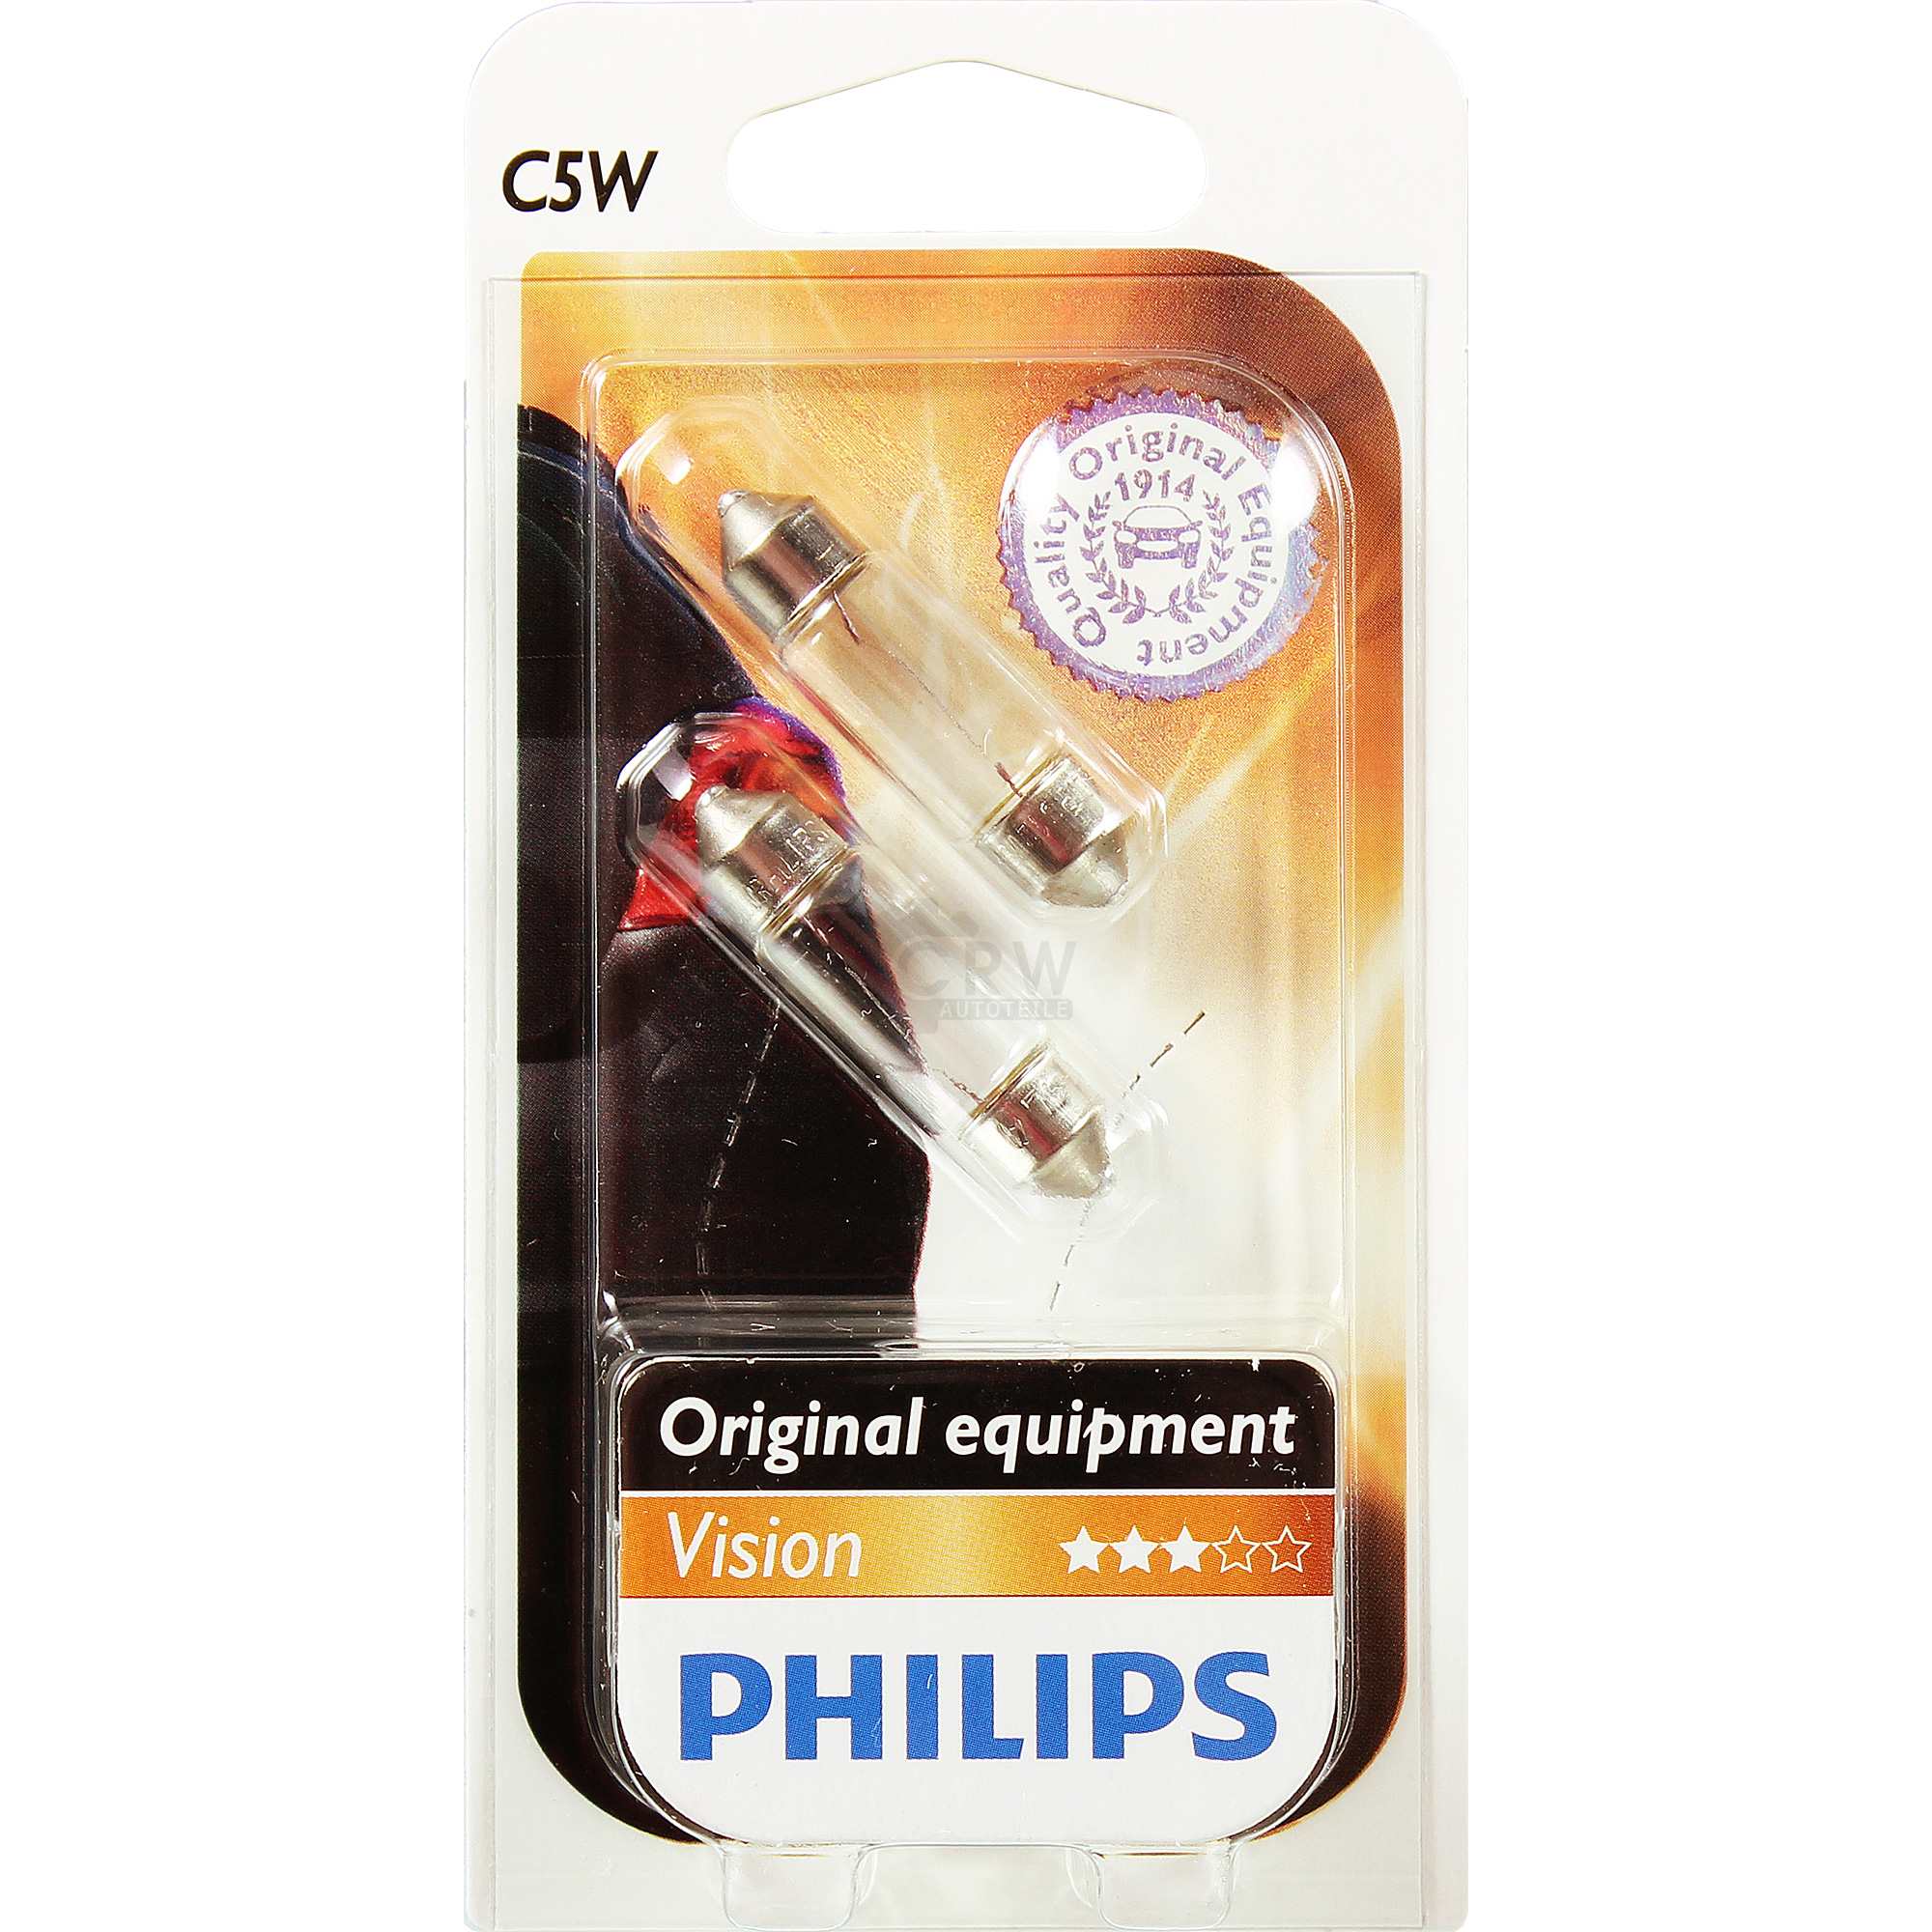 Philips Vision 2st. C5W 12V 5W SV8,5 soffitte Premium Blister Lampe Birne